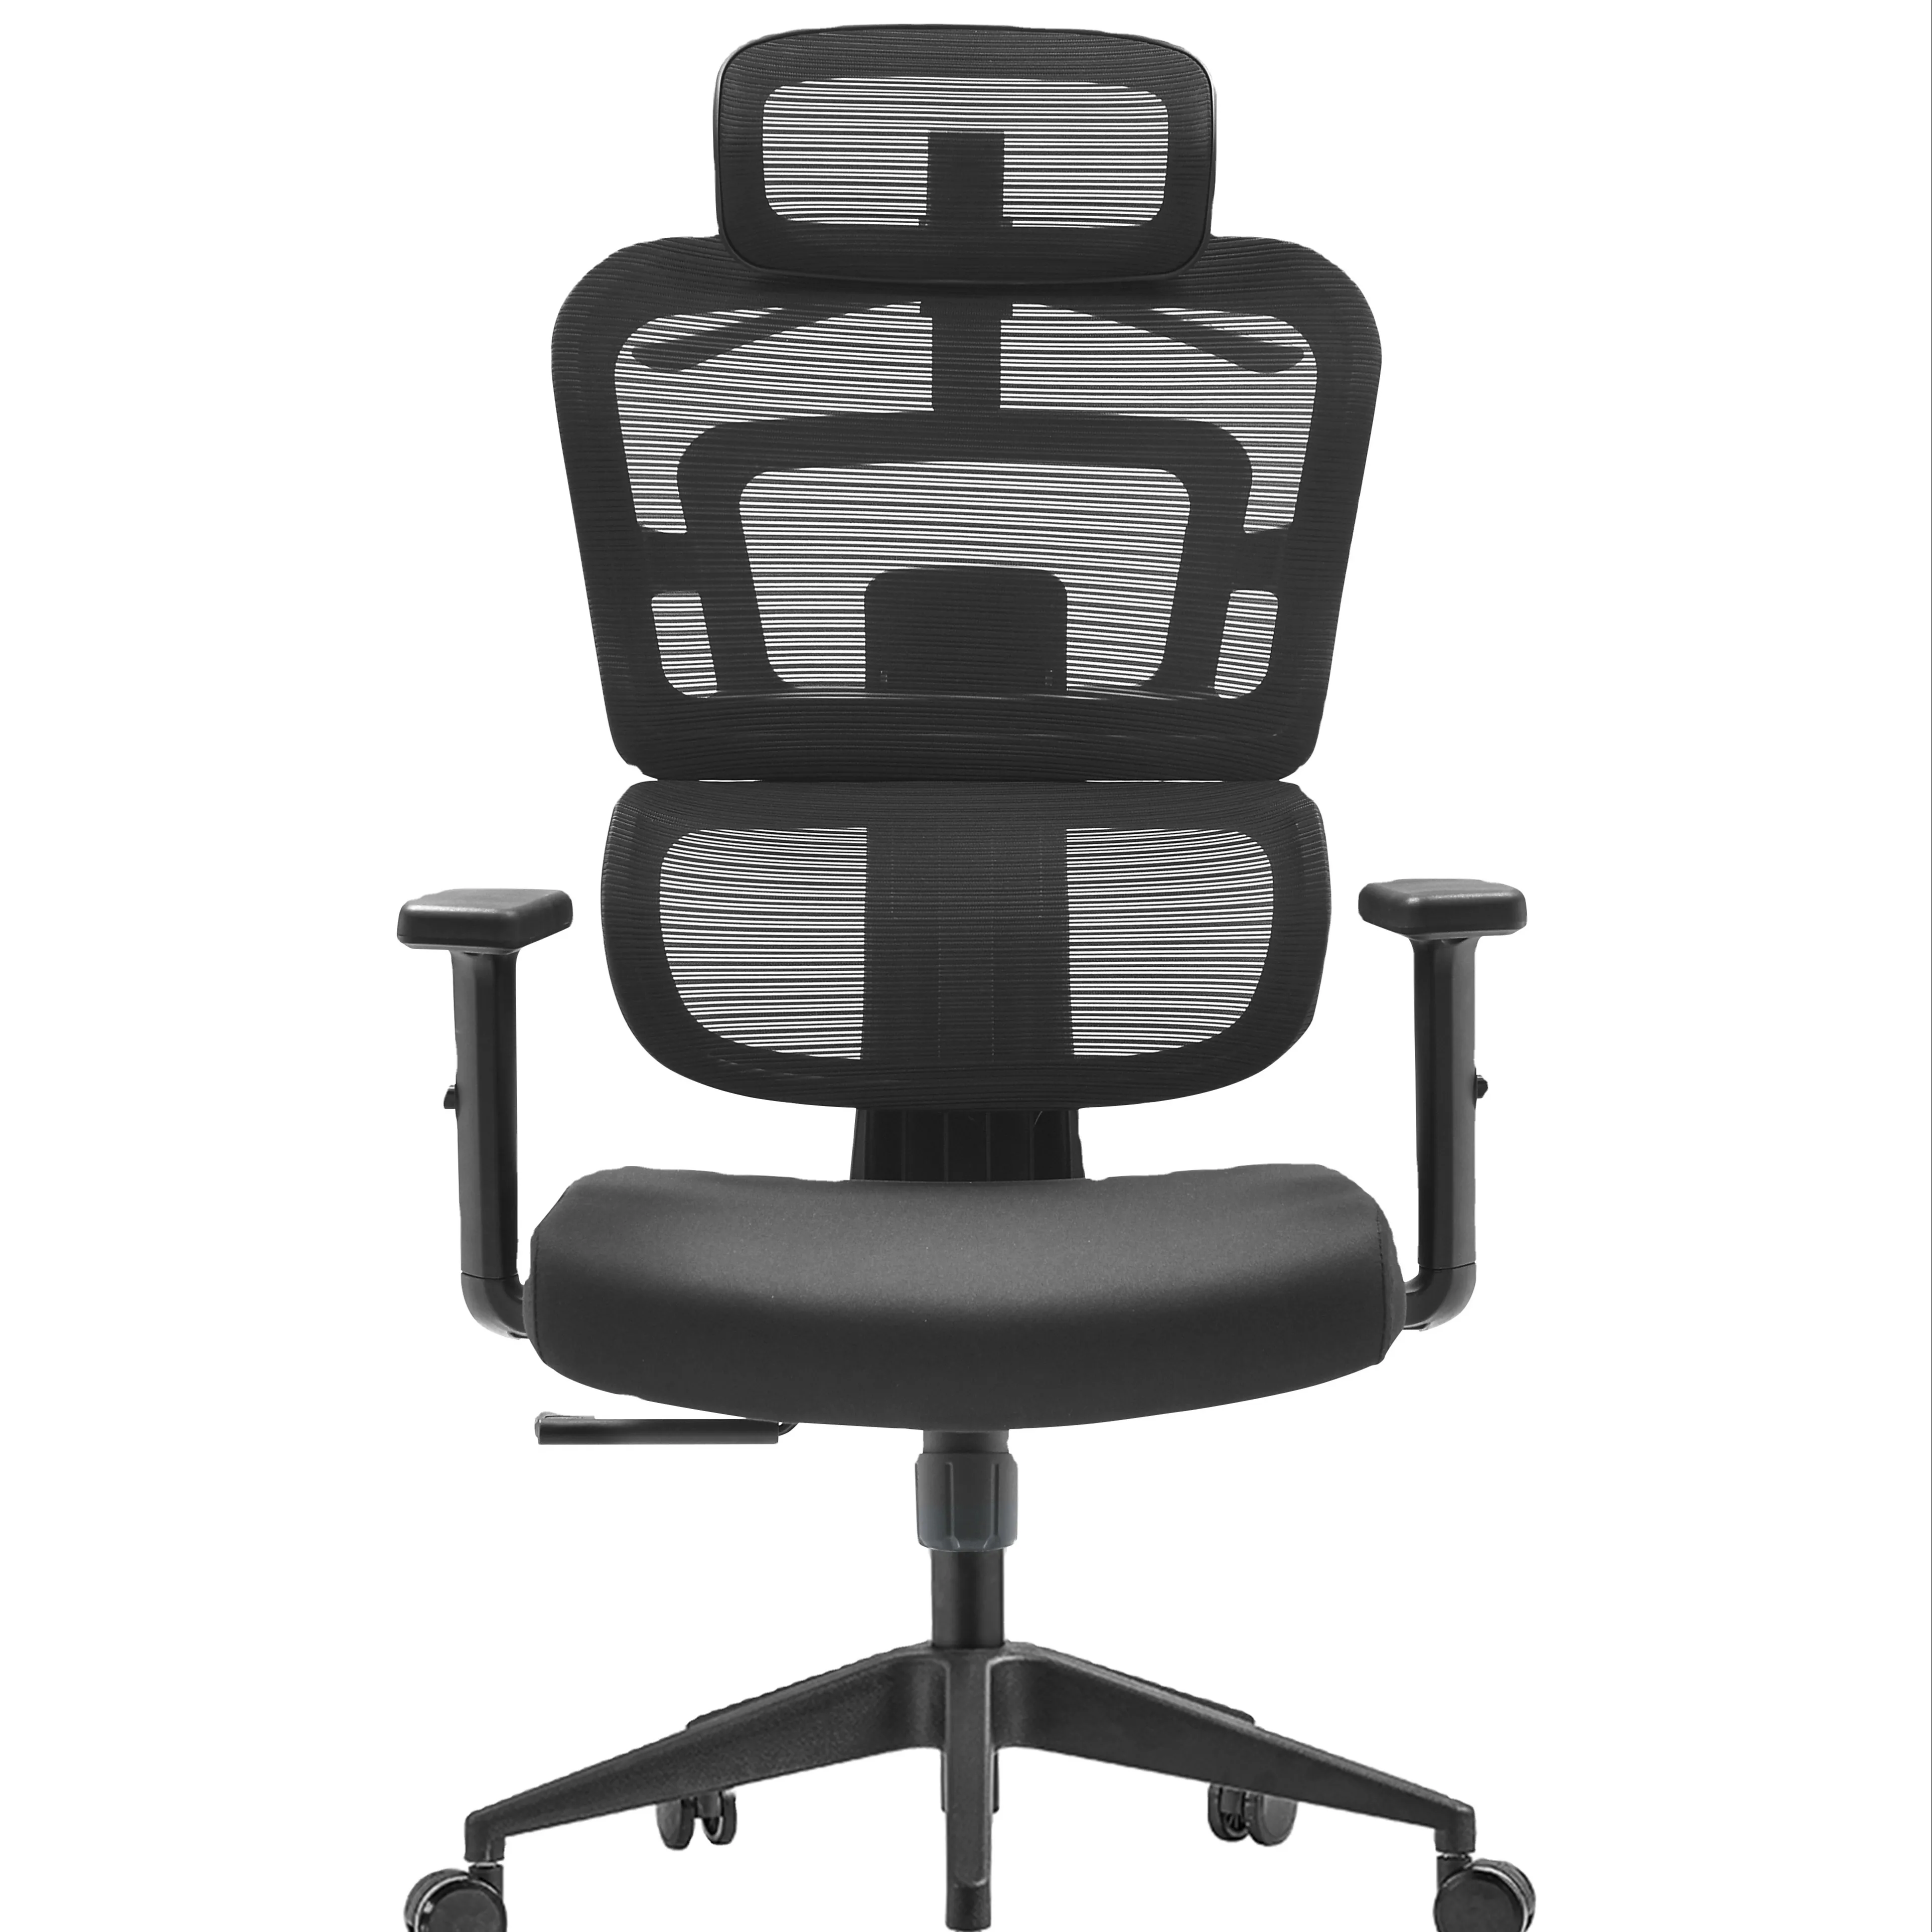 महेश ने अतिथि प्रबंधक कार्यालय की कुर्सी का अध्यक्षता किया, कार्यालय के लिए आधुनिक उच्च गुणवत्ता वाले कार्यालय की कुर्सी